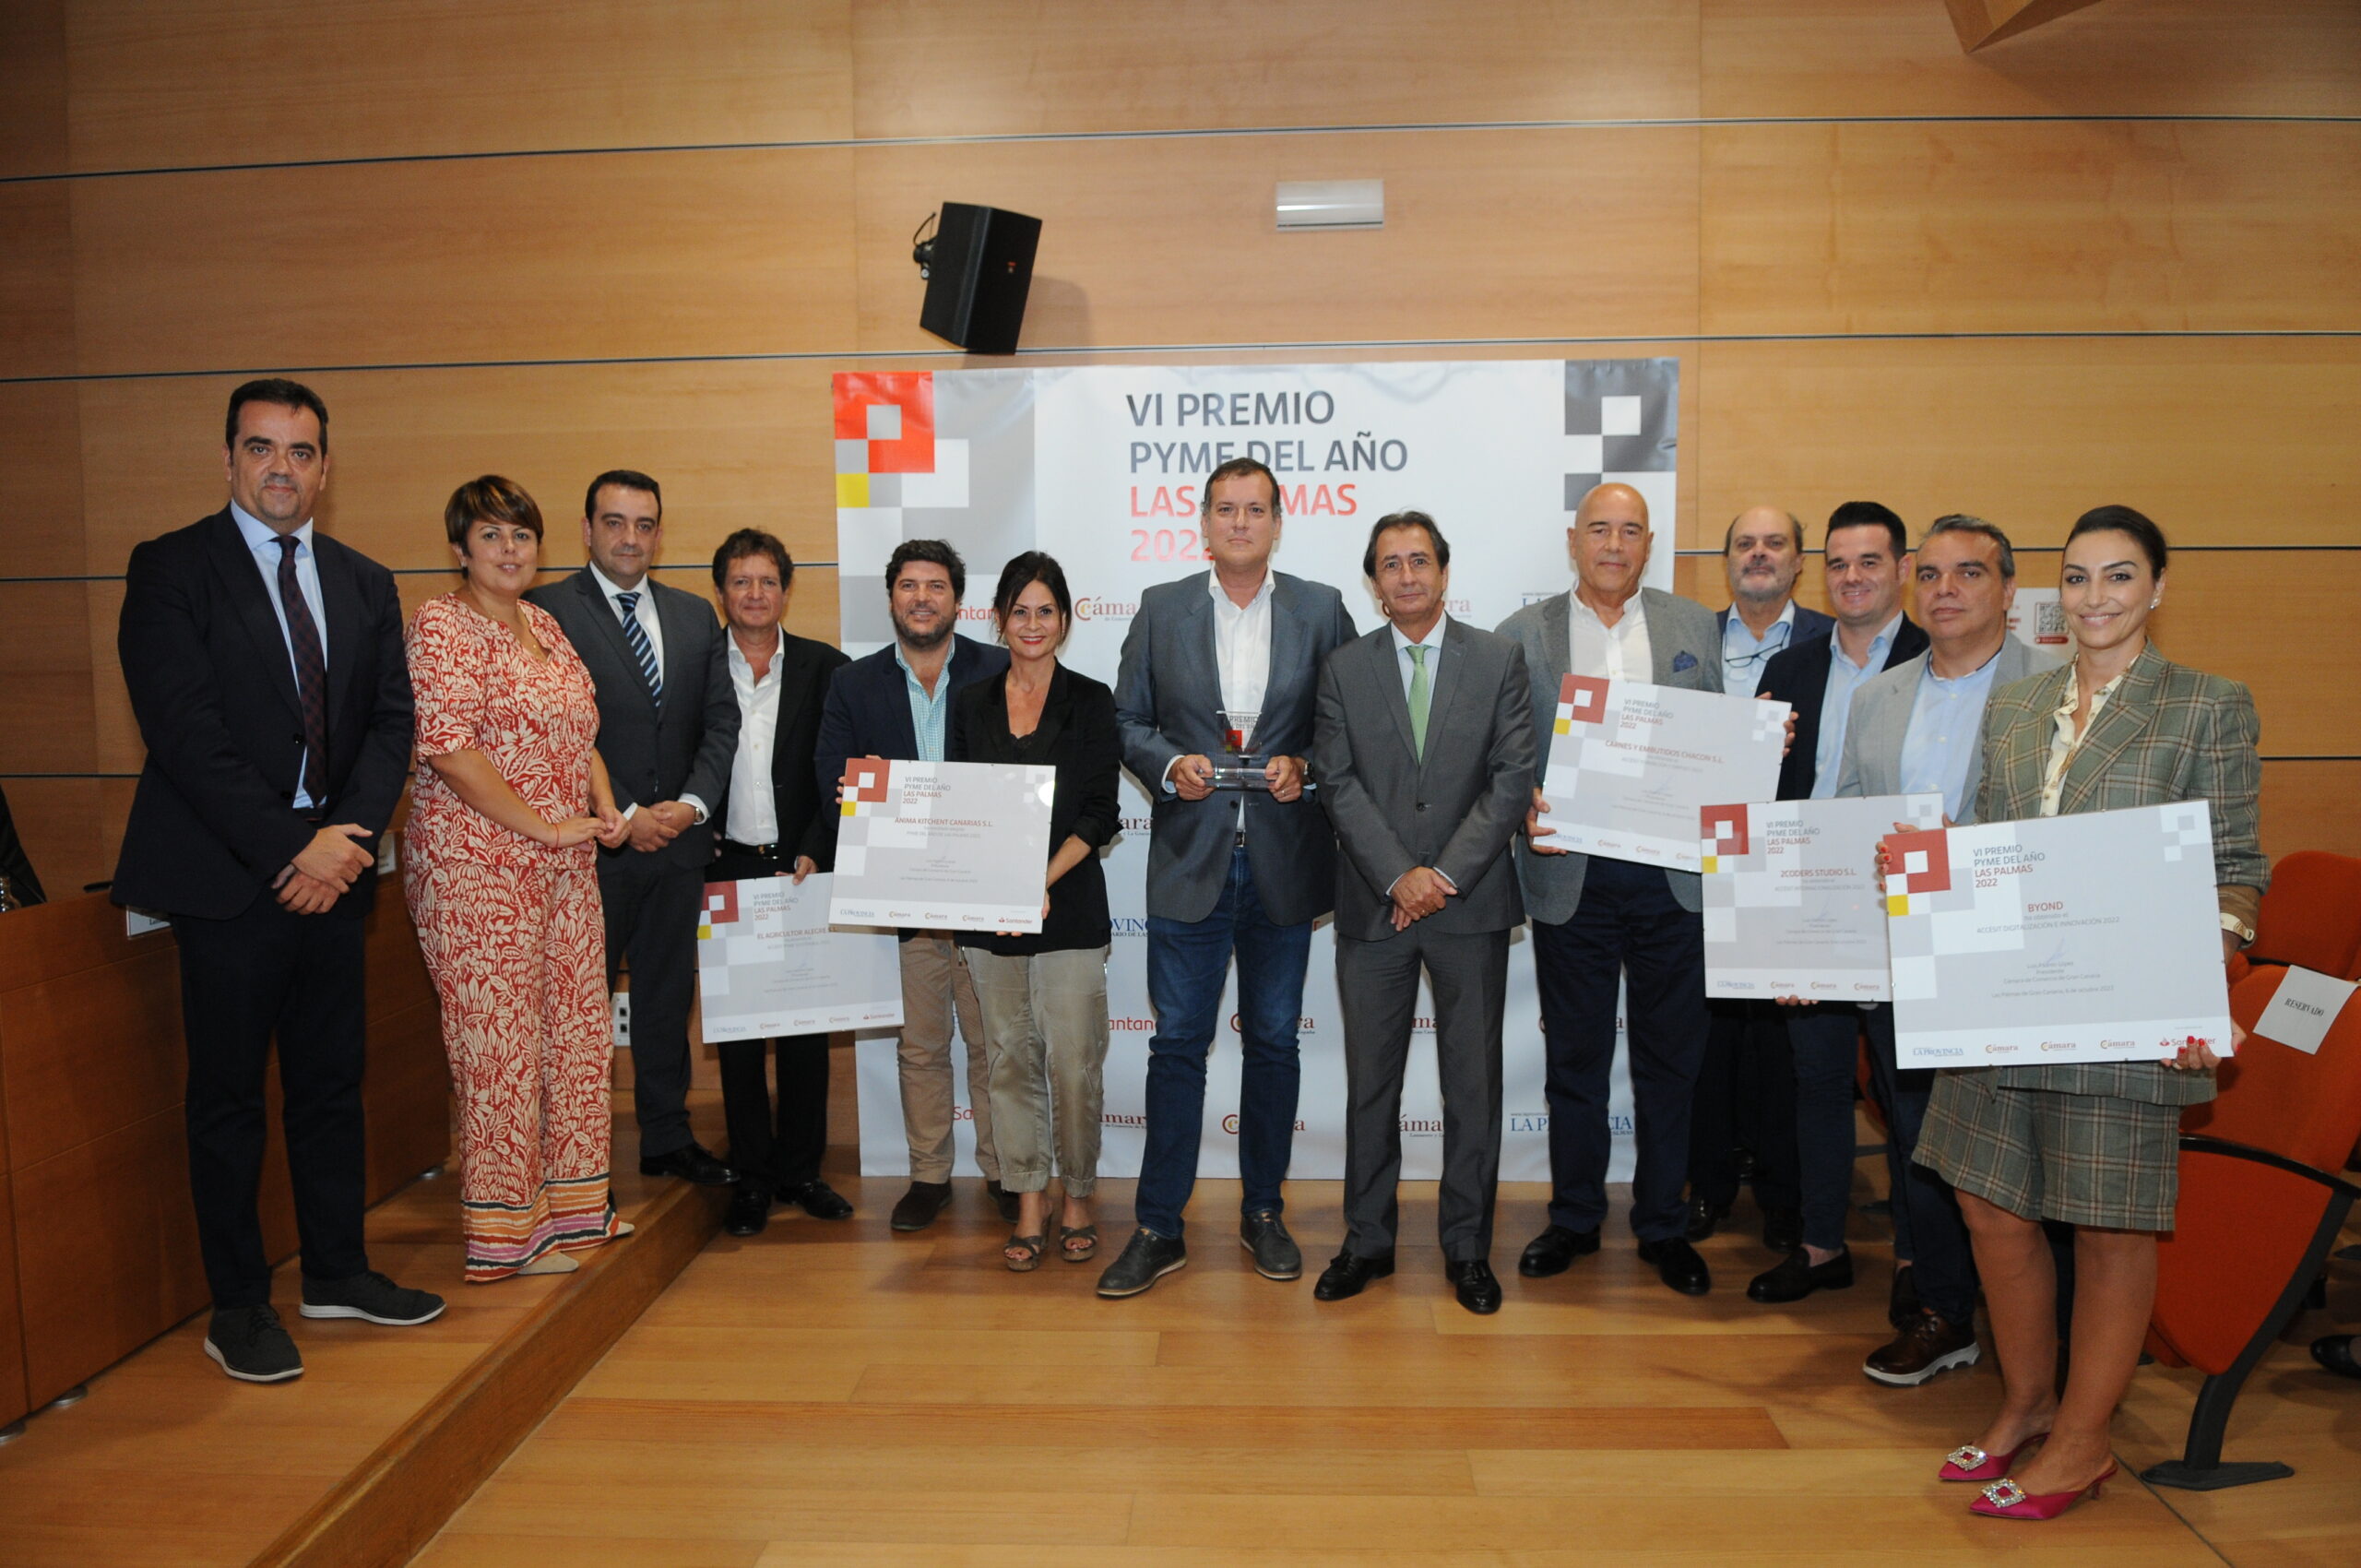 Convocada la séptima edición del Premio Pyme del Año de la provincia de Las Palmas